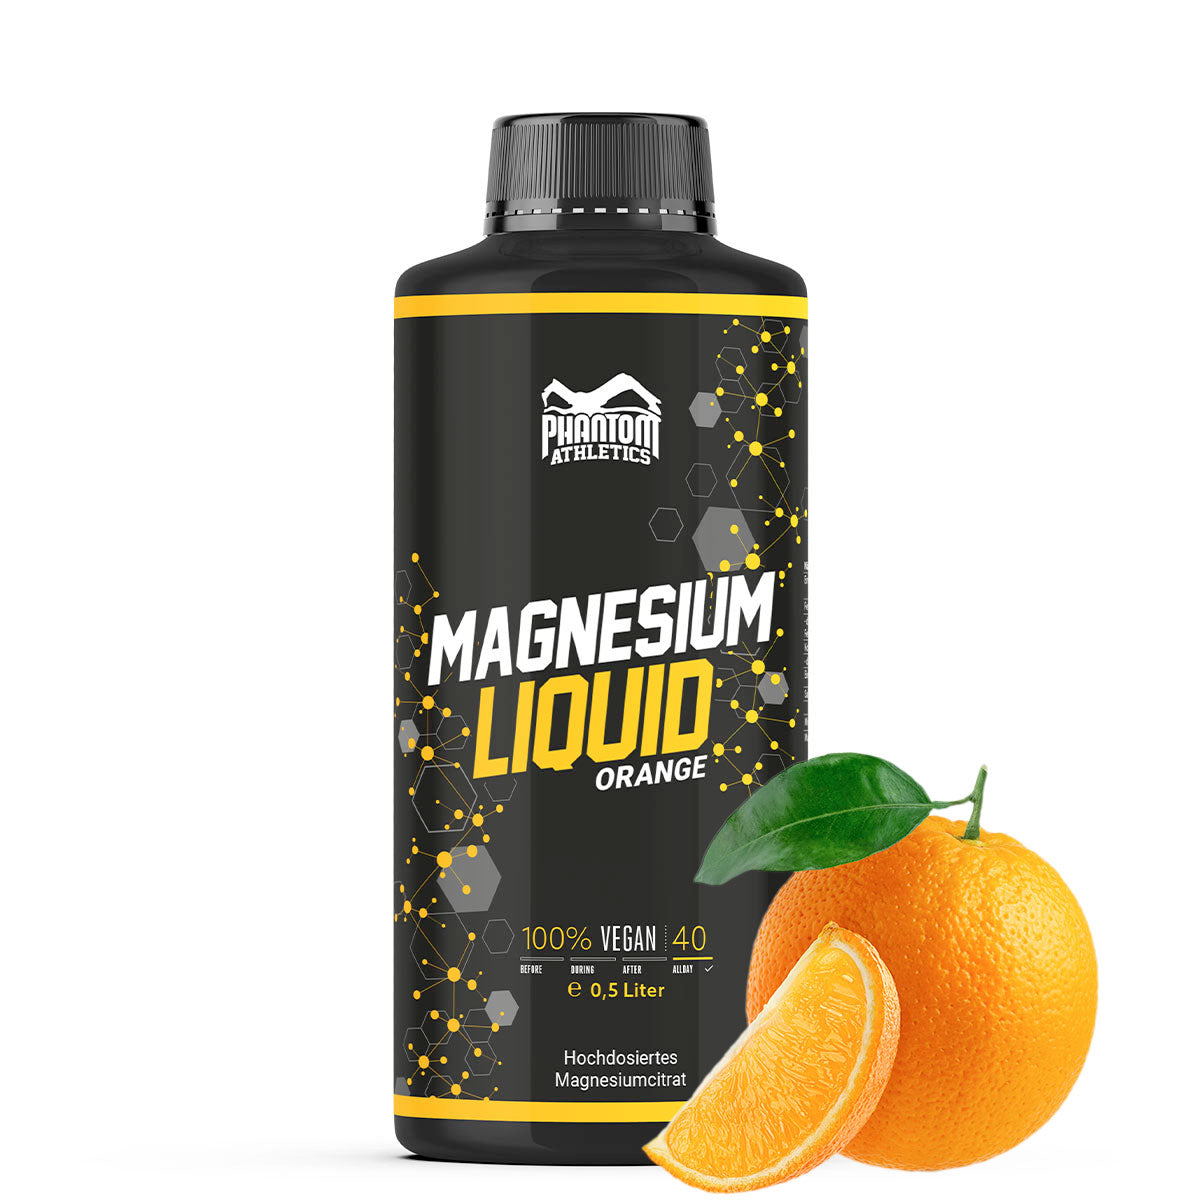 Phantom Magnesium Liquid - Tekoči magnezij za boljšo regeneracijo v borilnih veščinah.